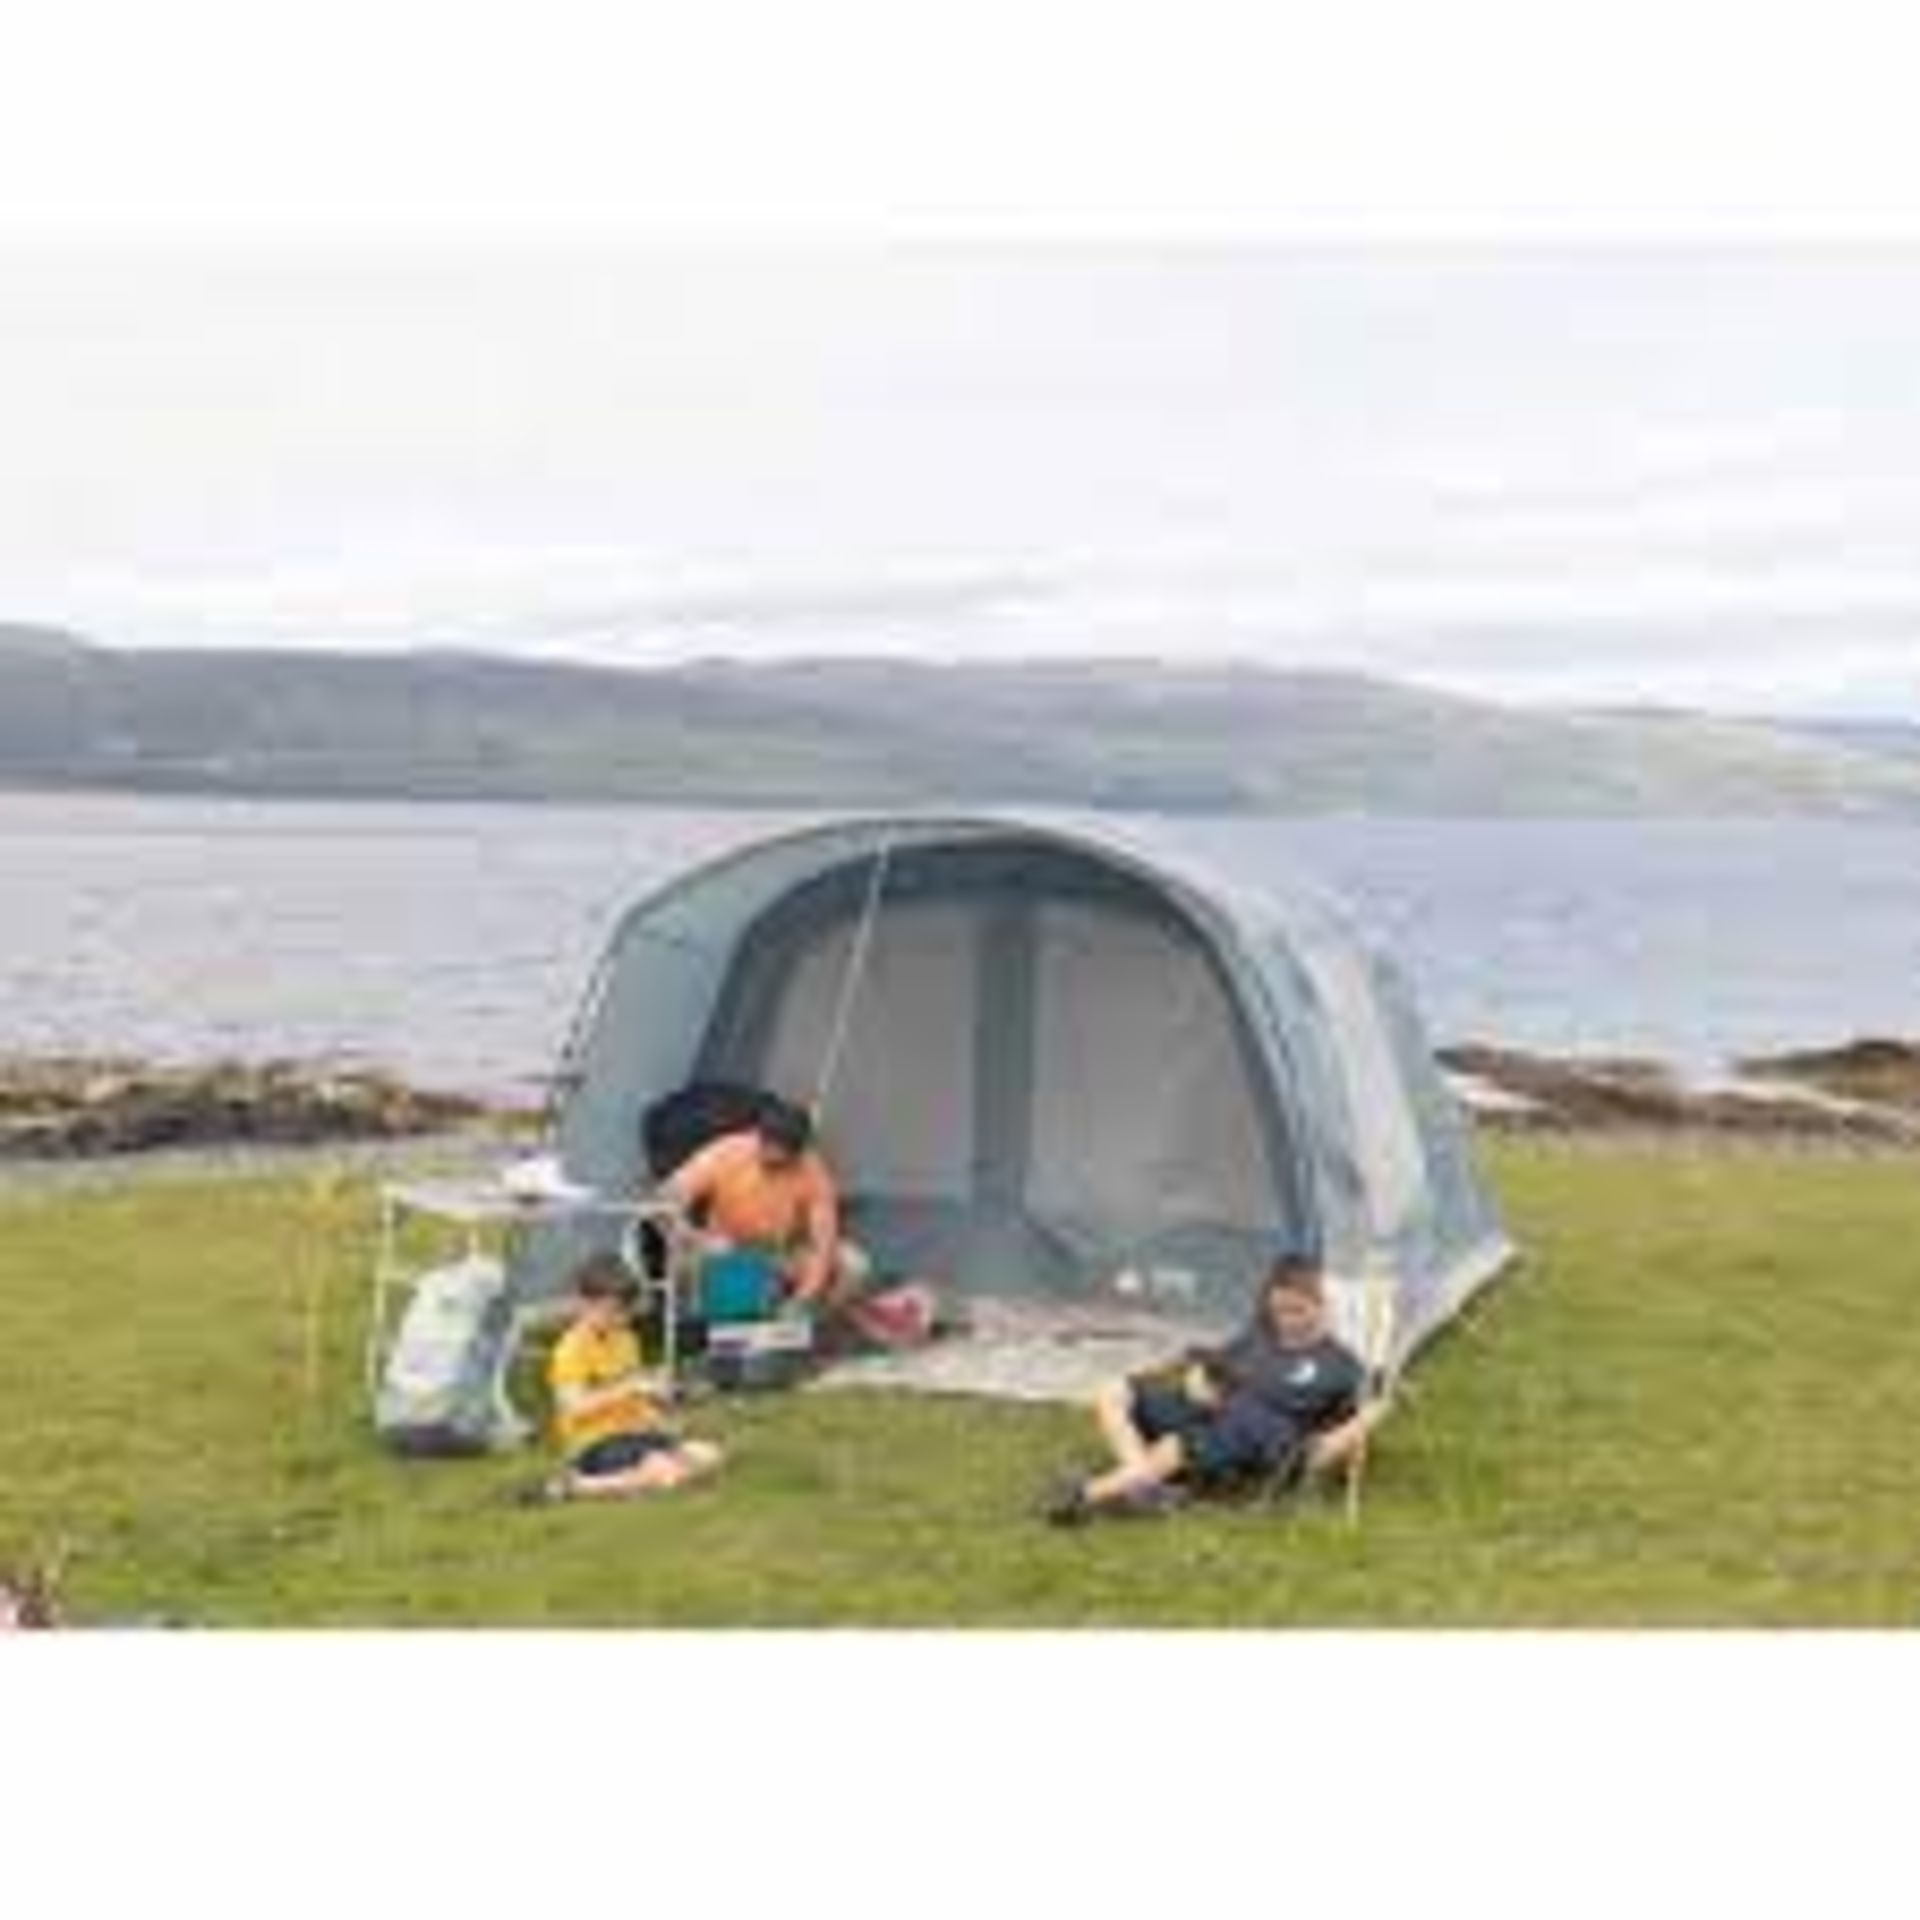 Vango Harris Air 350 Family Camping Tent. - SR5. RRP £650.00. New for 2023, the Vango Harris Air